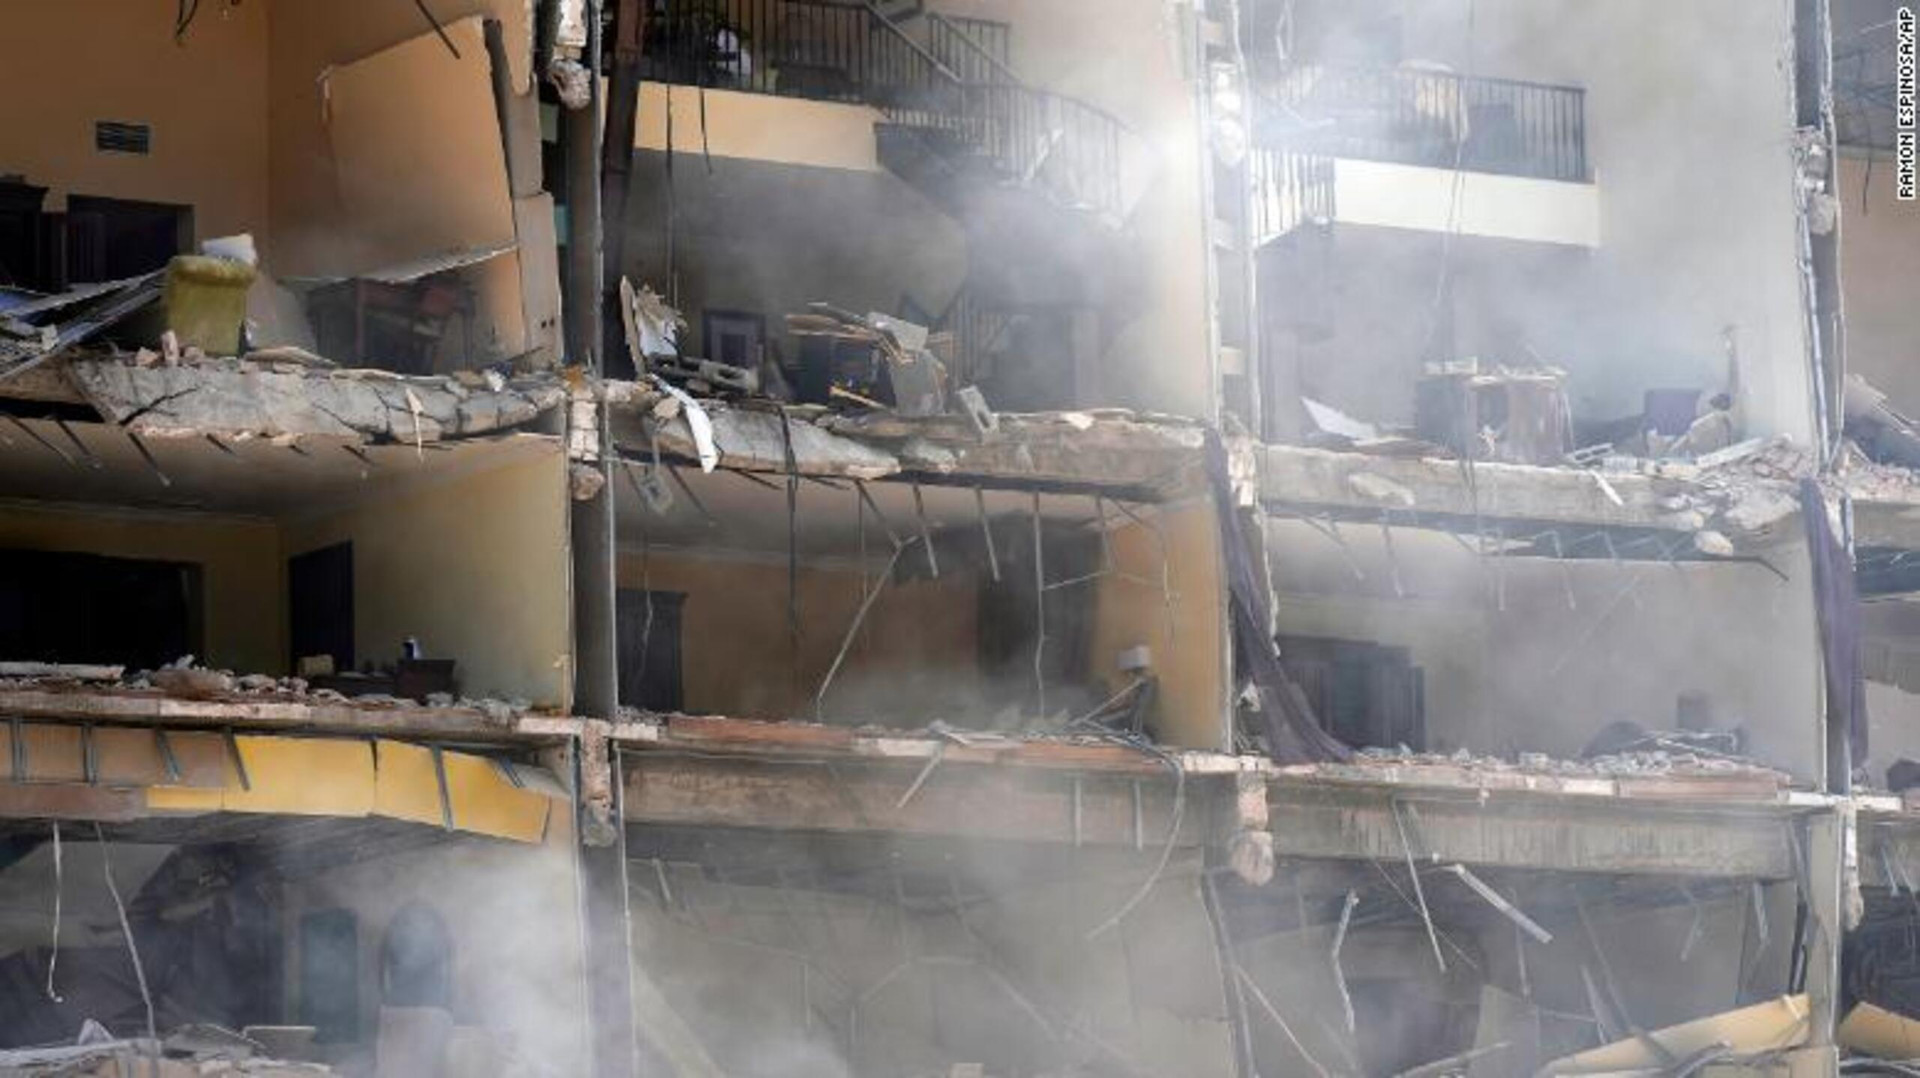 Ảnh: Hiện trường vụ nổ khiến 22 người chết tại khách sạn nổi tiếng ở Cuba - 6